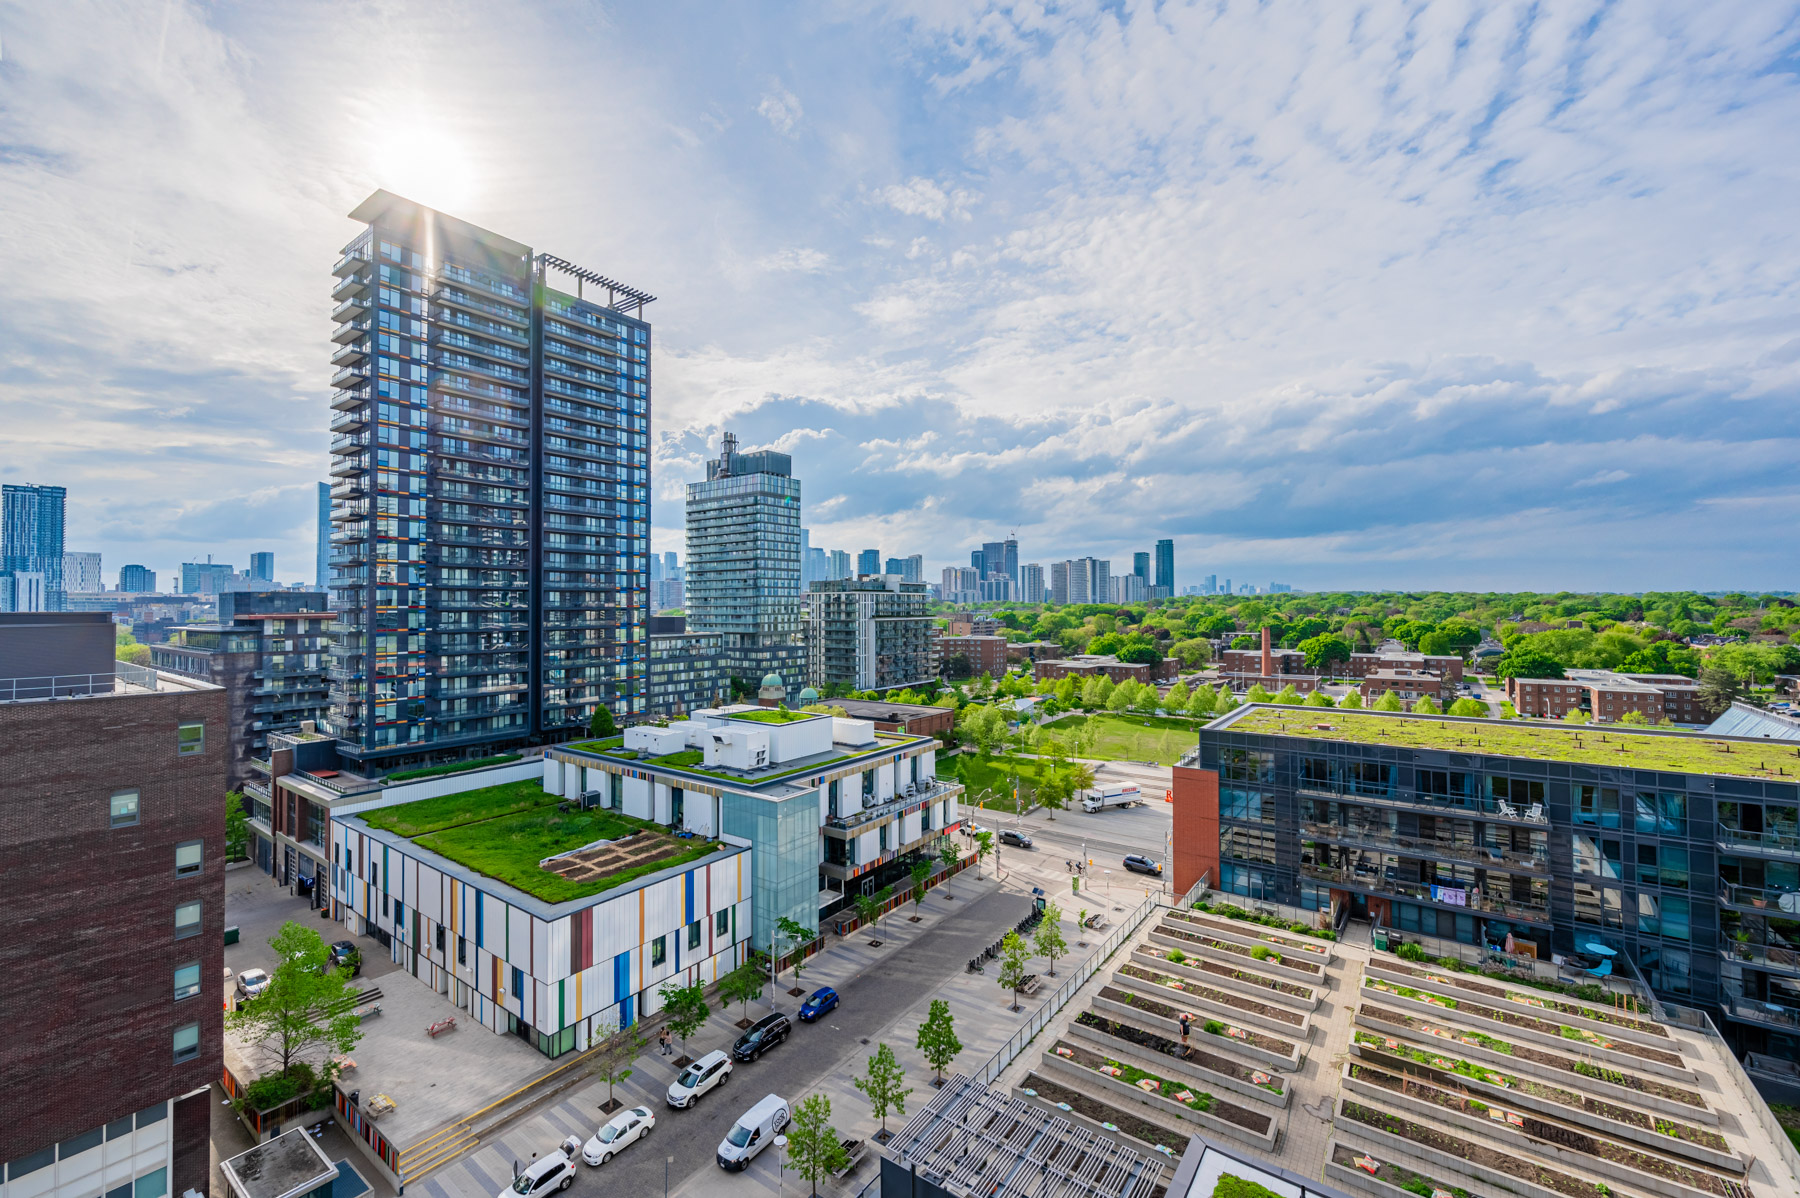 Buildings with rooftop gardens in Toronto's Regent Park neighbourhood.